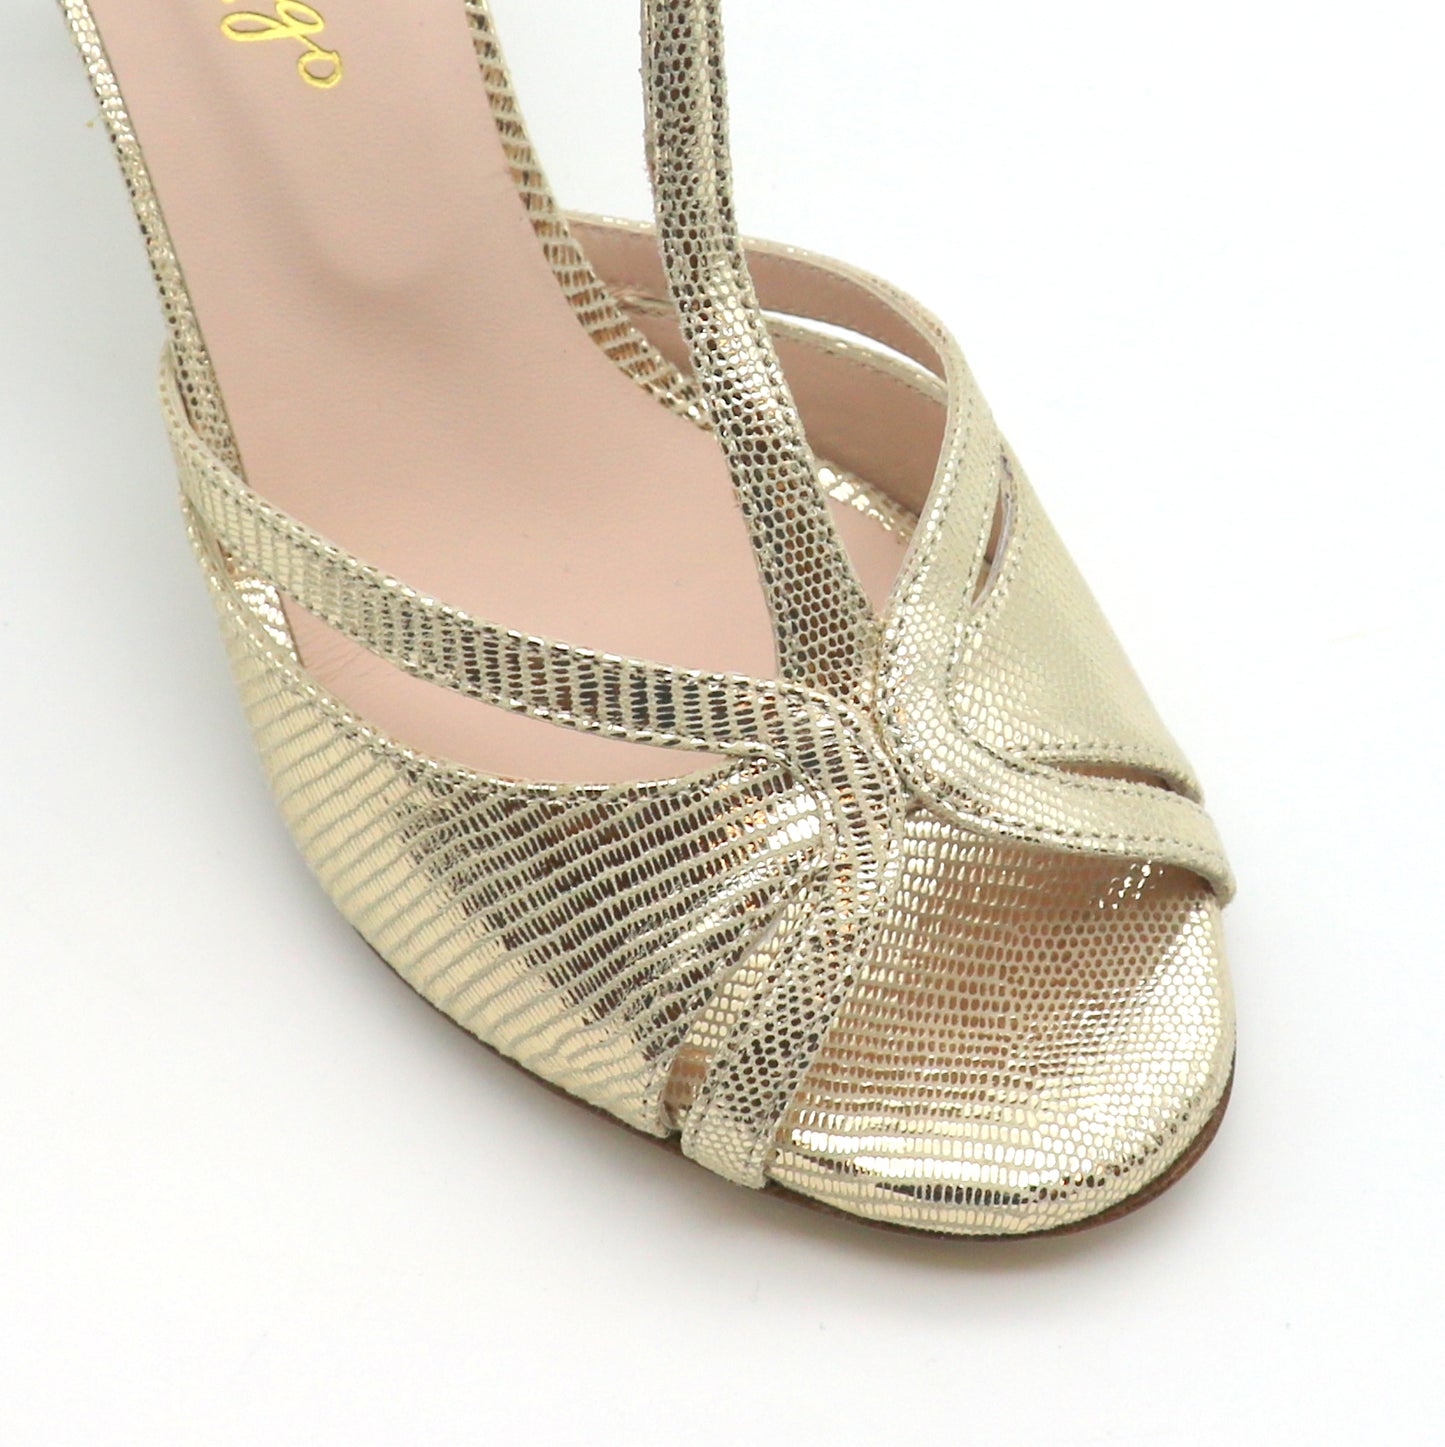 Picaflor Champagne Golden Shiny heels 8cm